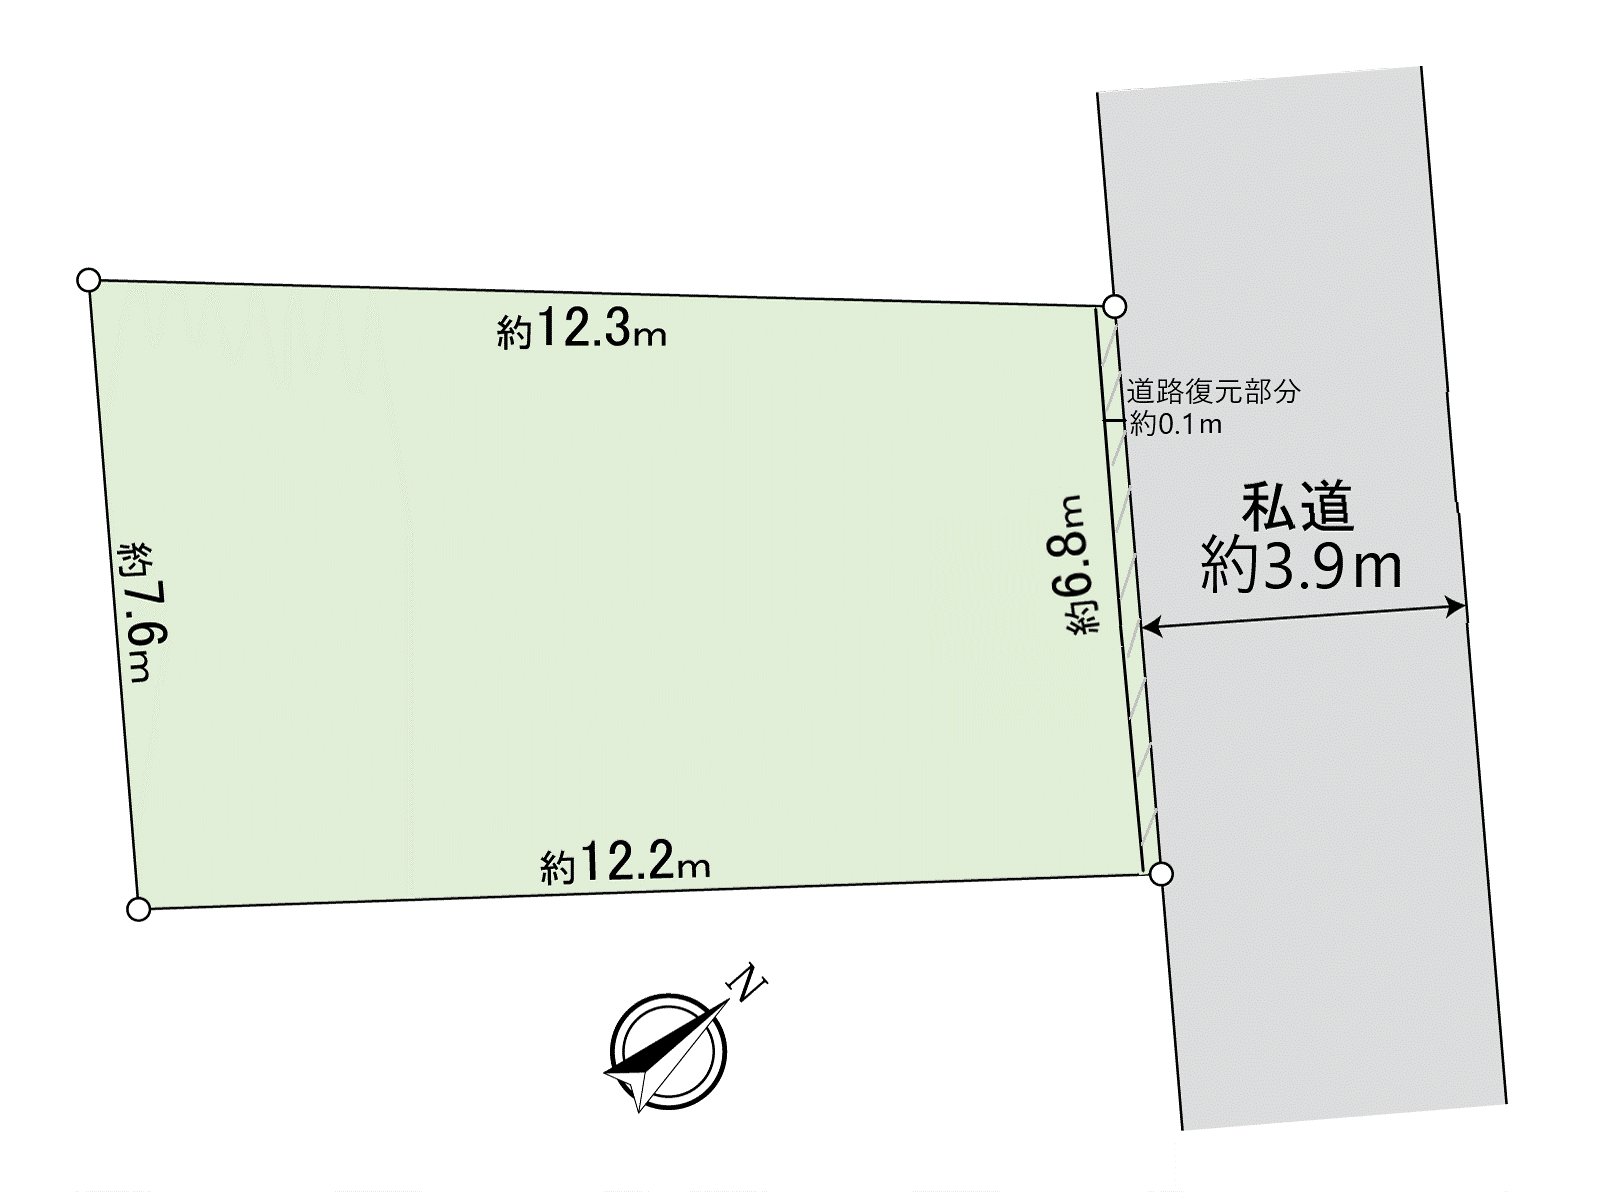 东急世田谷线"上町"车站步行7分钟